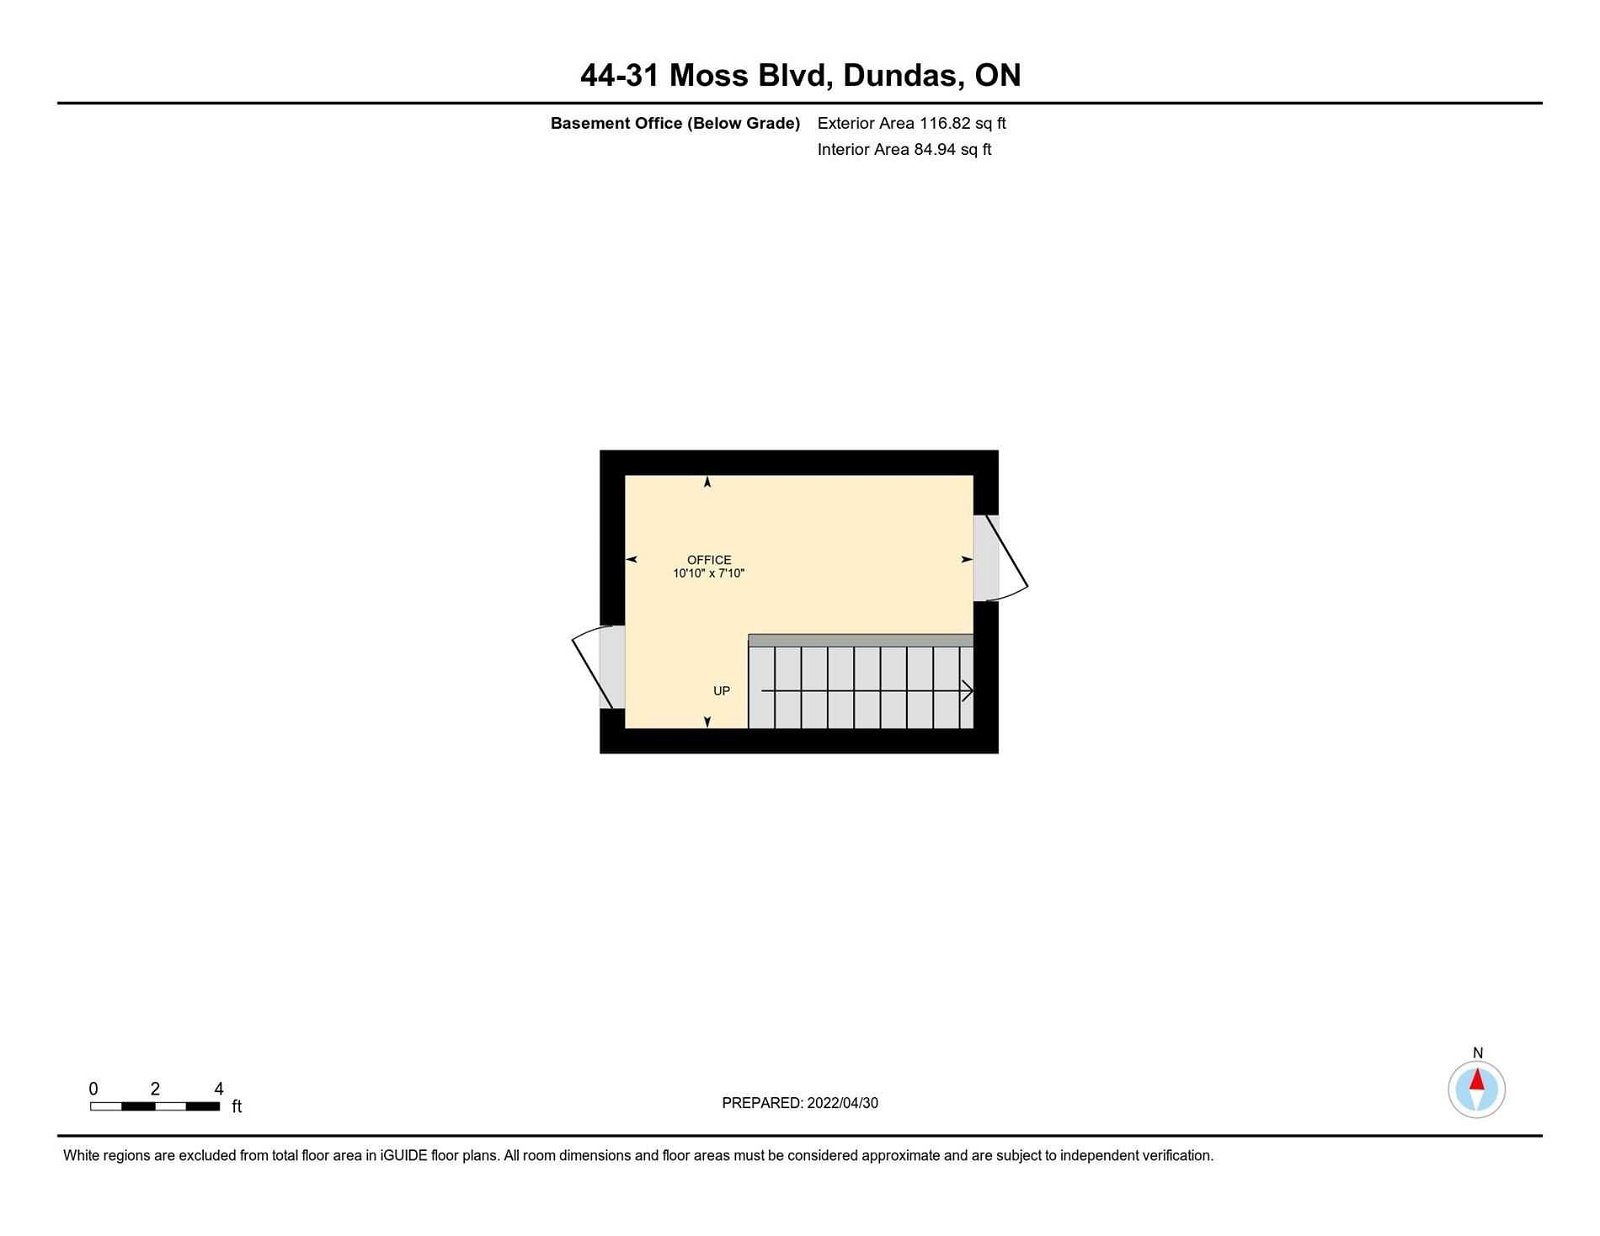 31 Moss Blvd, unit 44 for sale - image #33